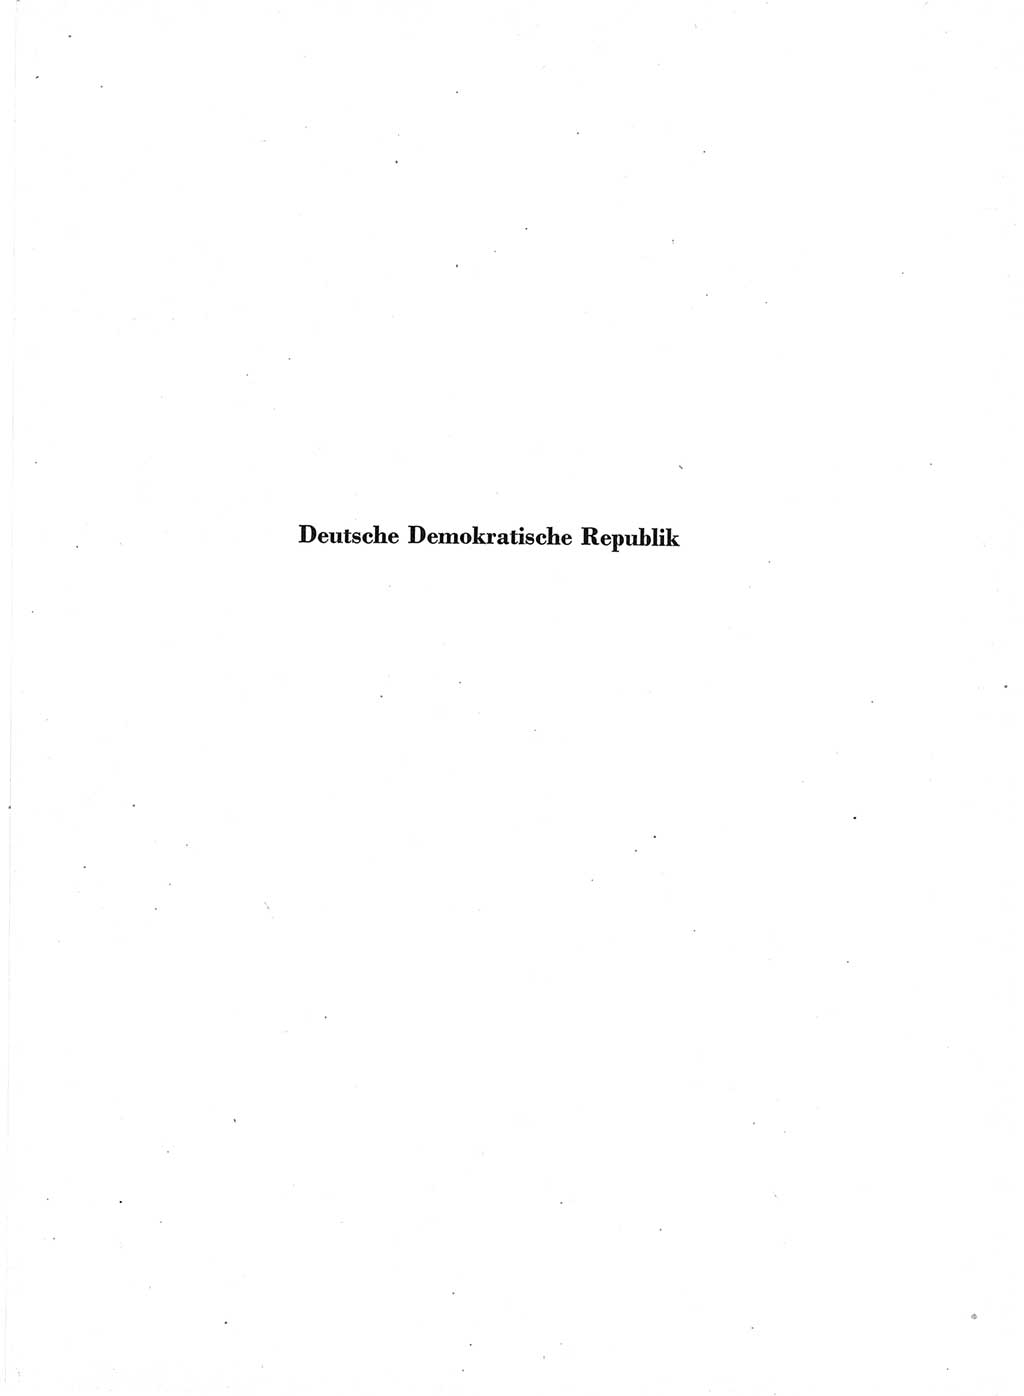 Statistisches Jahrbuch der Deutschen Demokratischen Republik (DDR) 1960-1961, Seite 1 (Stat. Jb. DDR 1960-1961, S. 1)